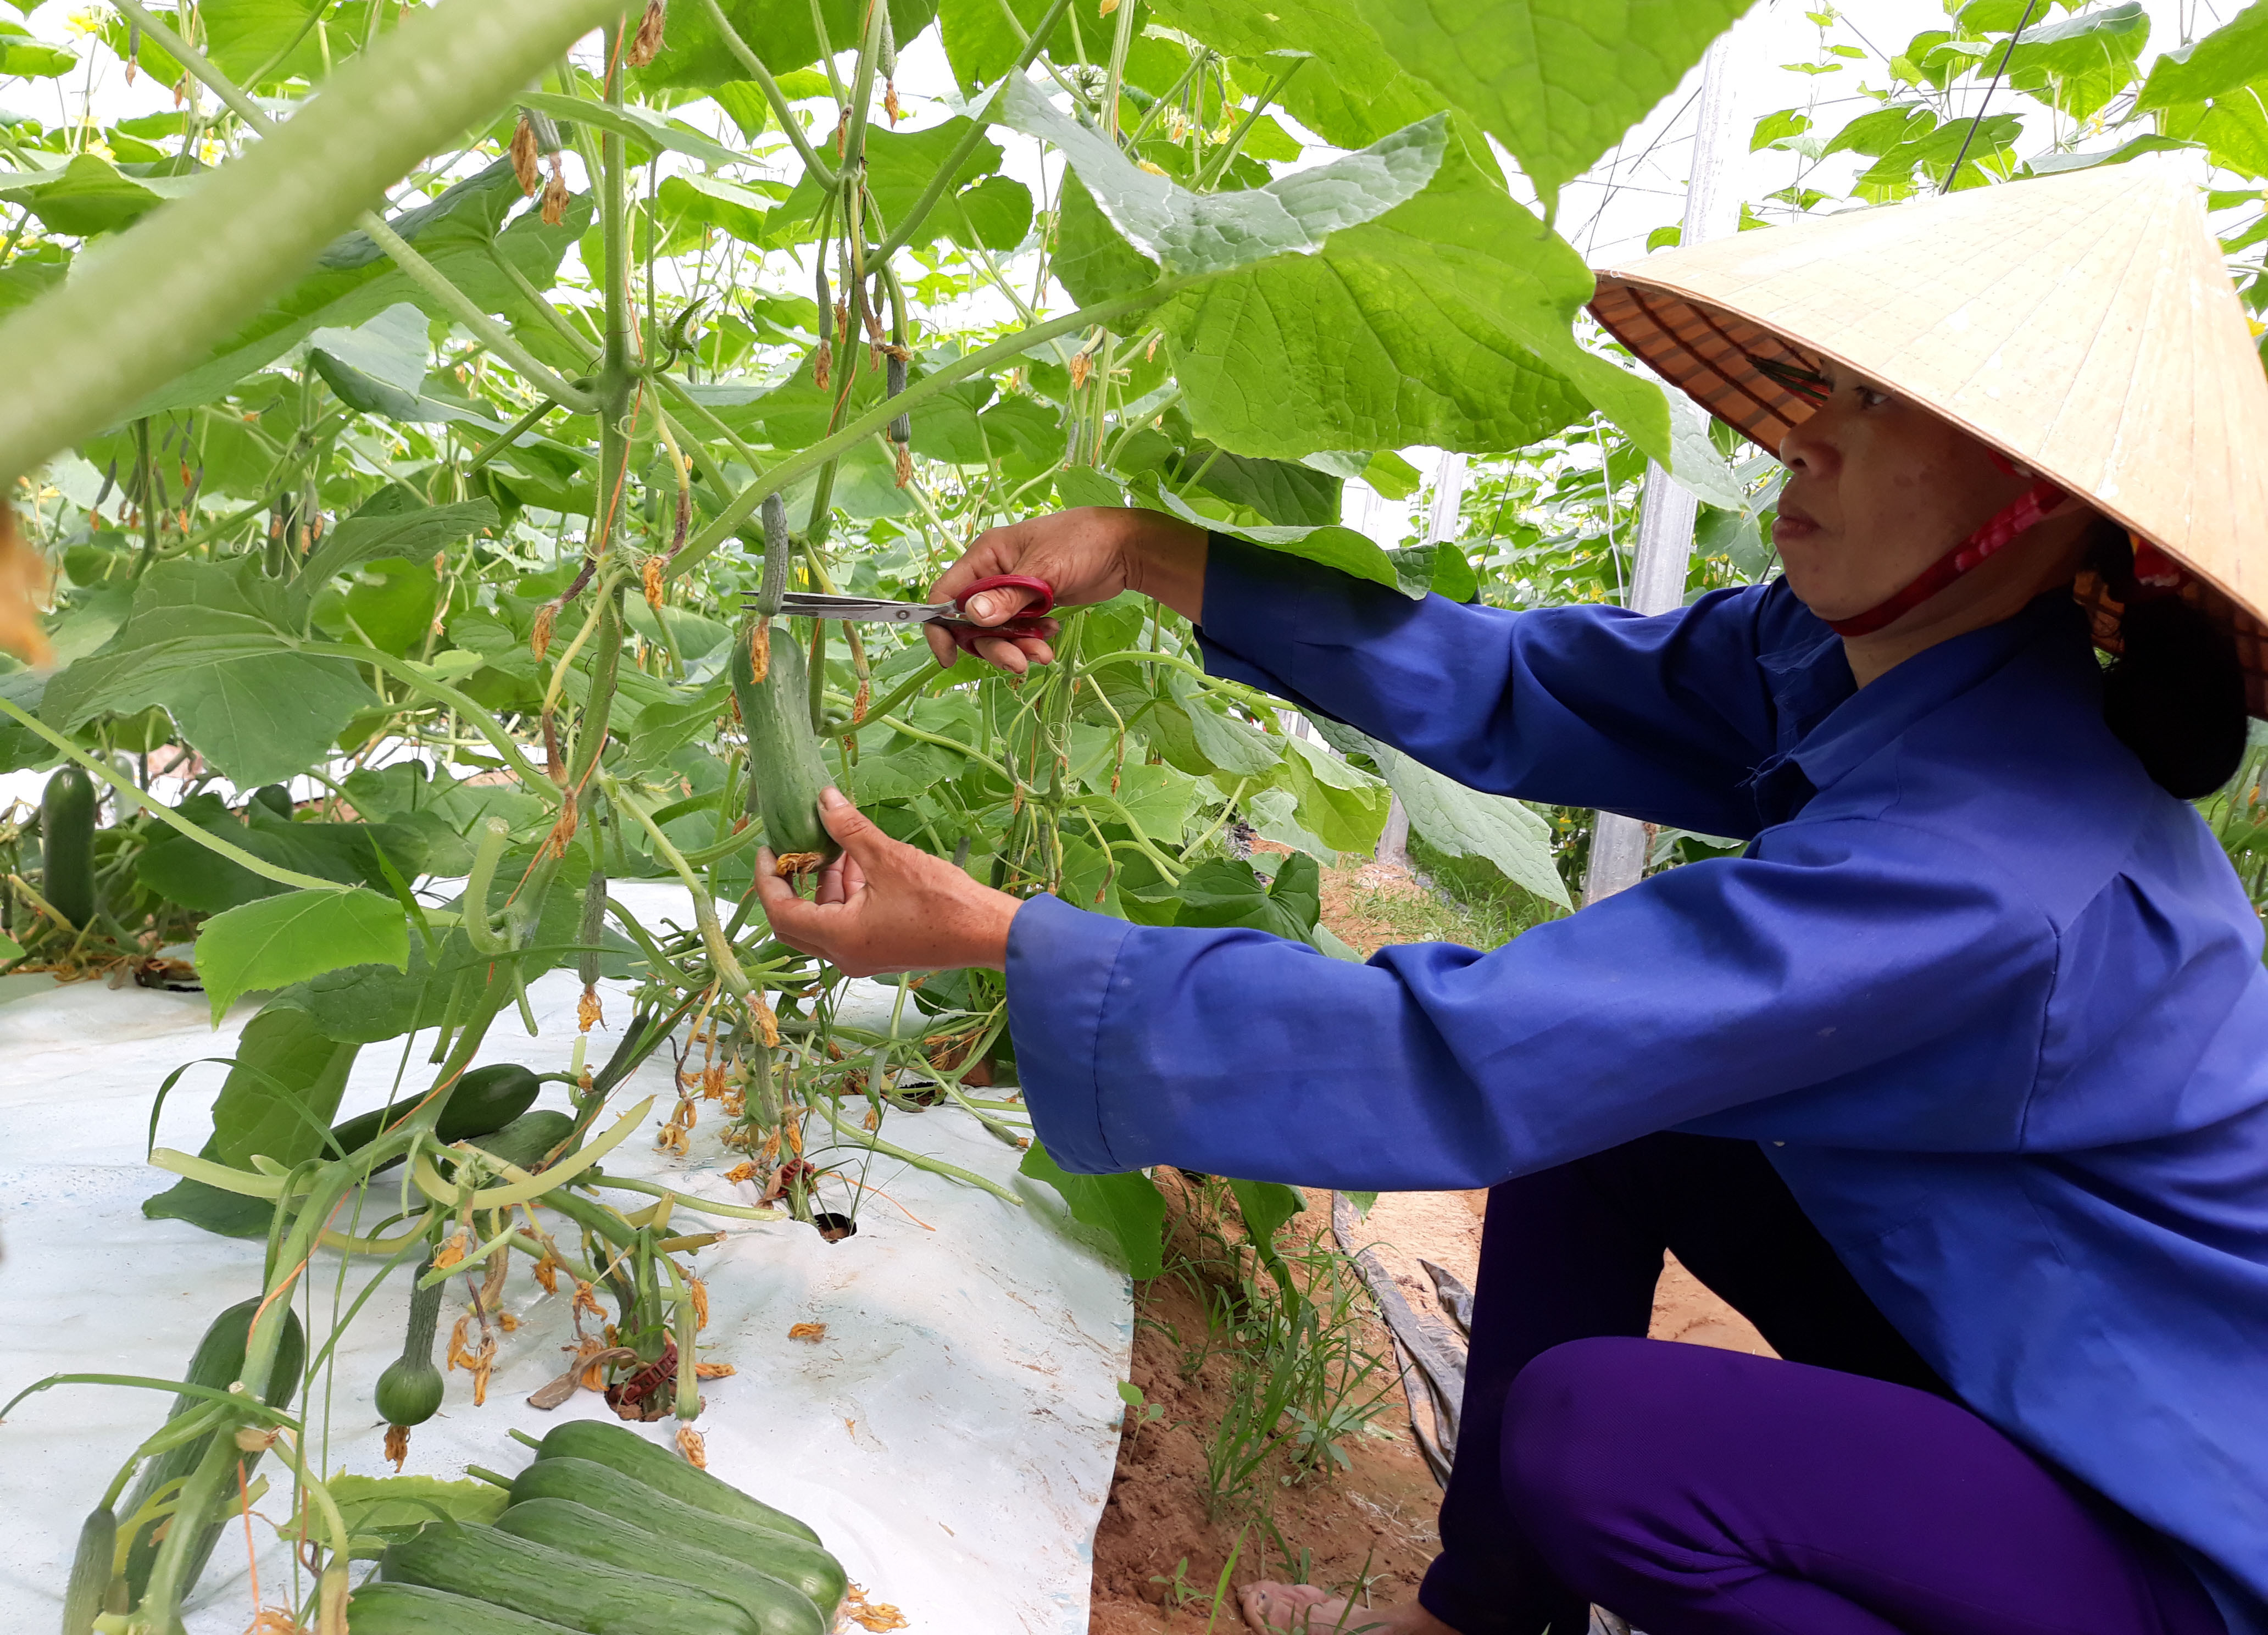 Mô hình trồng dưa chuột mang lại hiệu quả kinh tế cao ở xã Nam Phúc, ảnh Thúy Tình